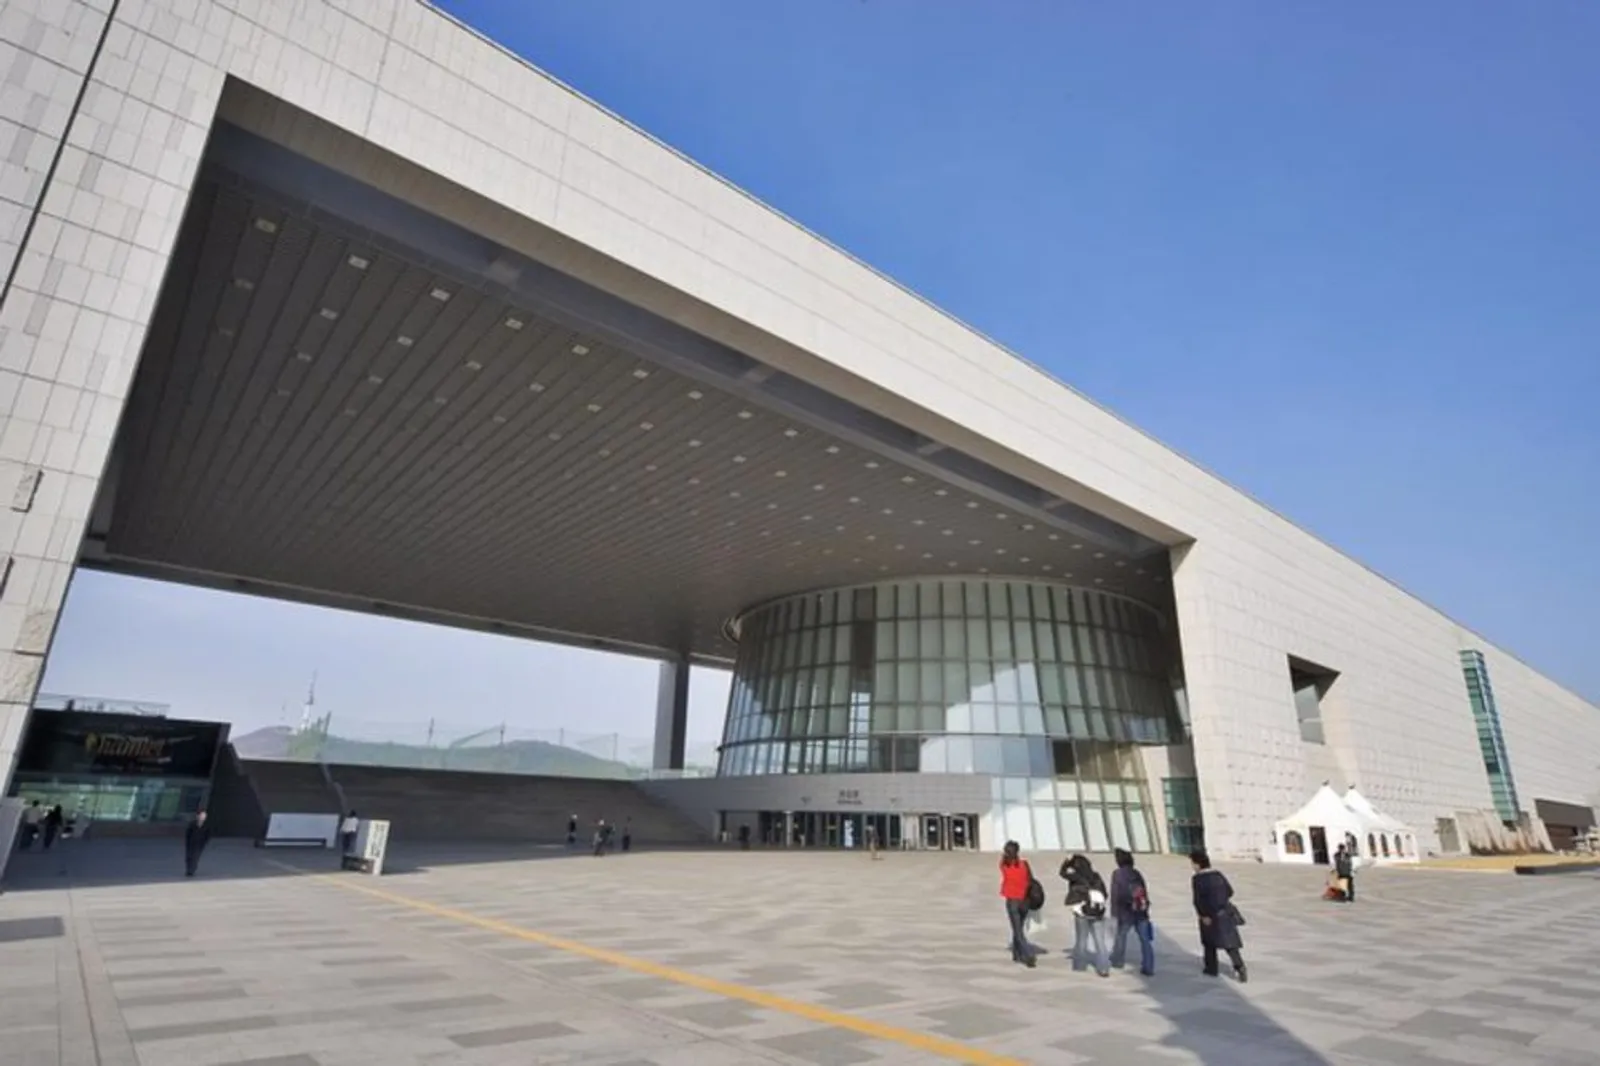 Masuk Museum Nasional Korea Gratis, Ada Apa Saja?